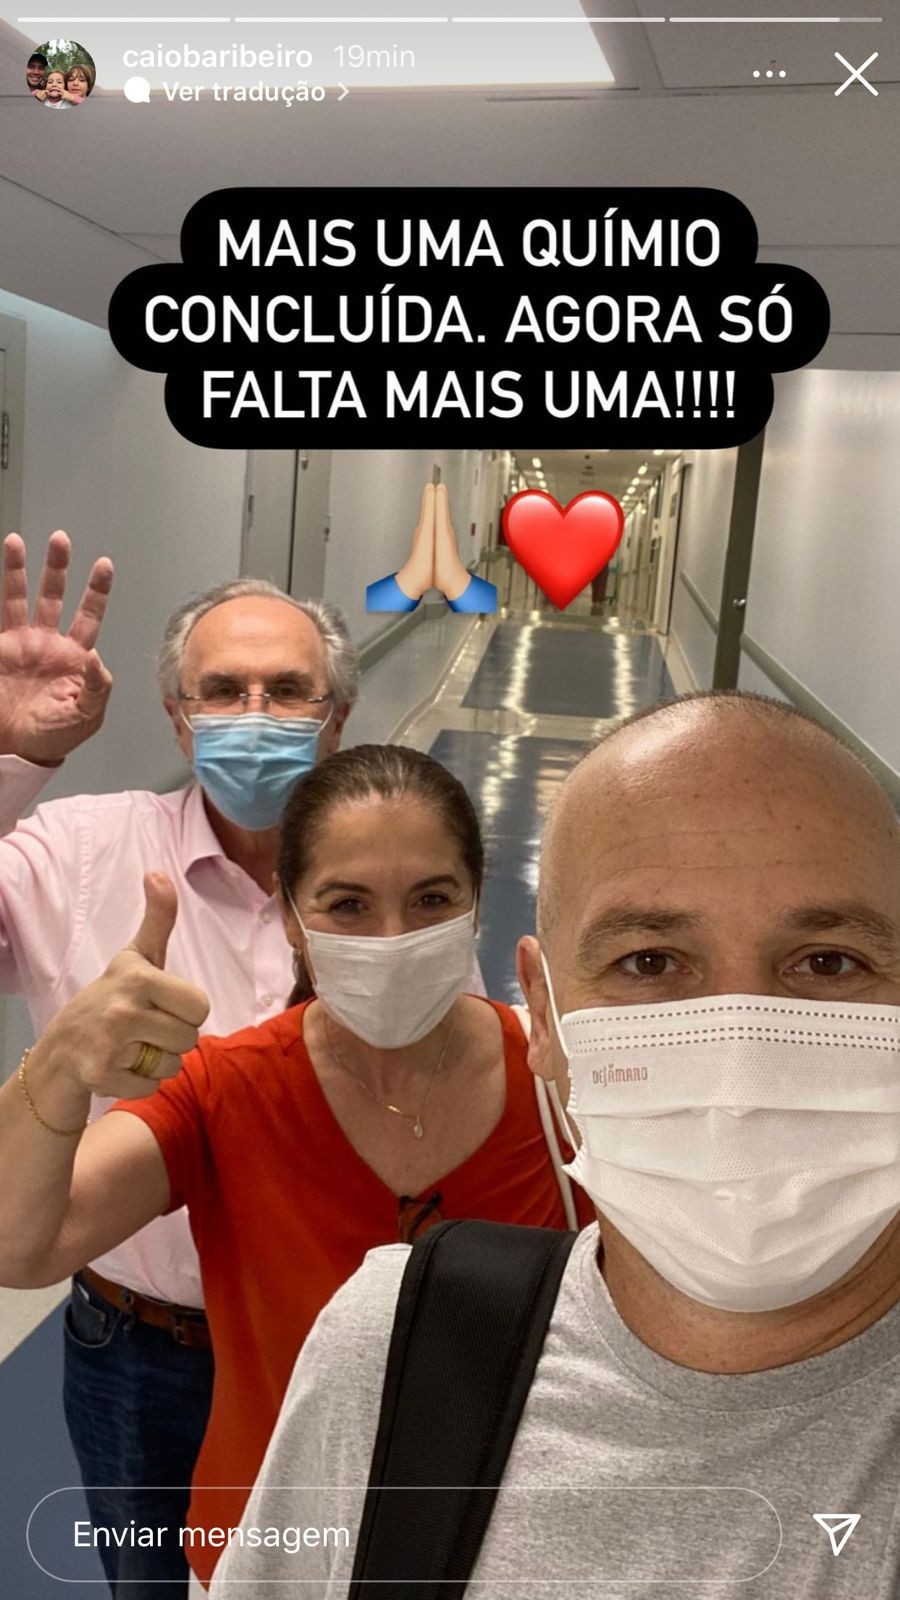 Caio Ribeiro celebra quimio (Foto: Reprodução/Instagram)